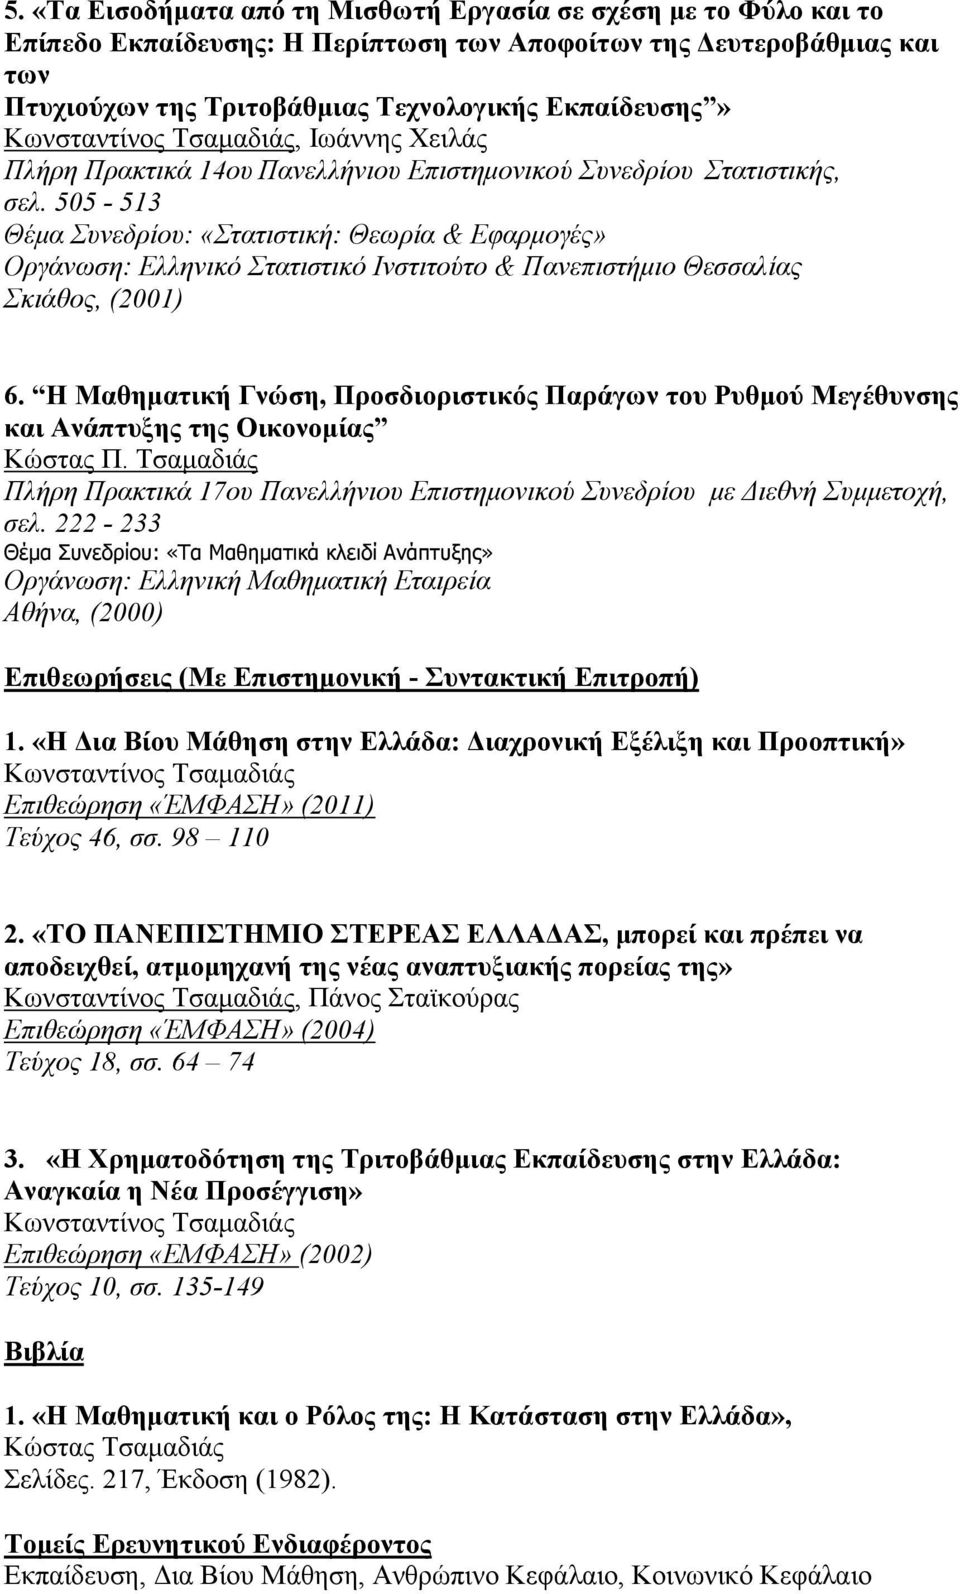 505-513 Θέμα Συνεδρίου: «Στατιστική: Θεωρία & Εφαρμογές» Οργάνωση: Ελληνικό Στατιστικό Ινστιτούτο & Πανεπιστήμιο Θεσσαλίας Σκιάθος, (2001) 6.